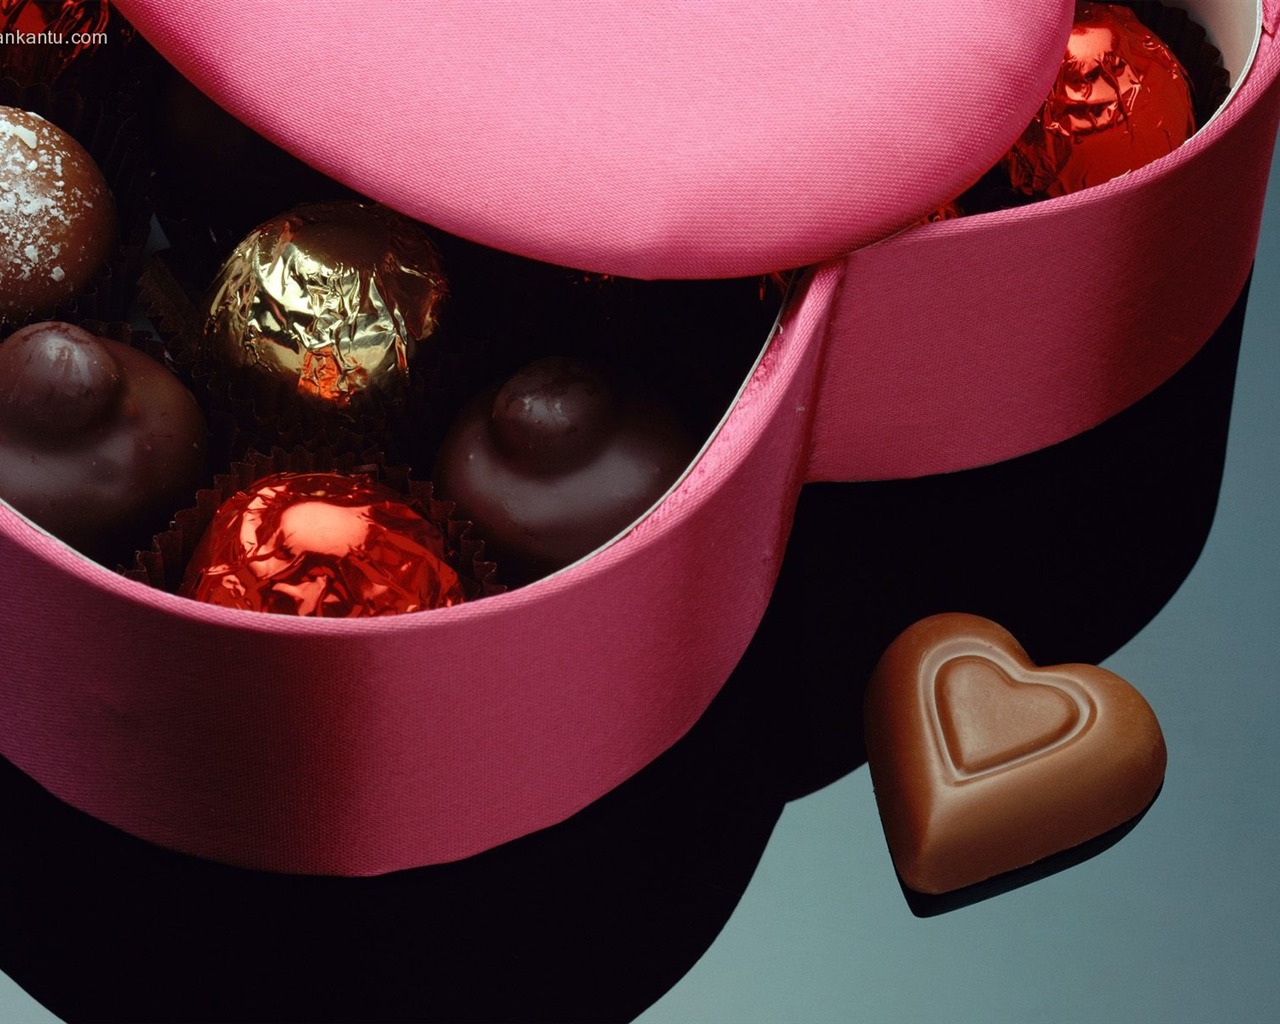 Le indélébile Saint Valentin au chocolat #2 - 1280x1024